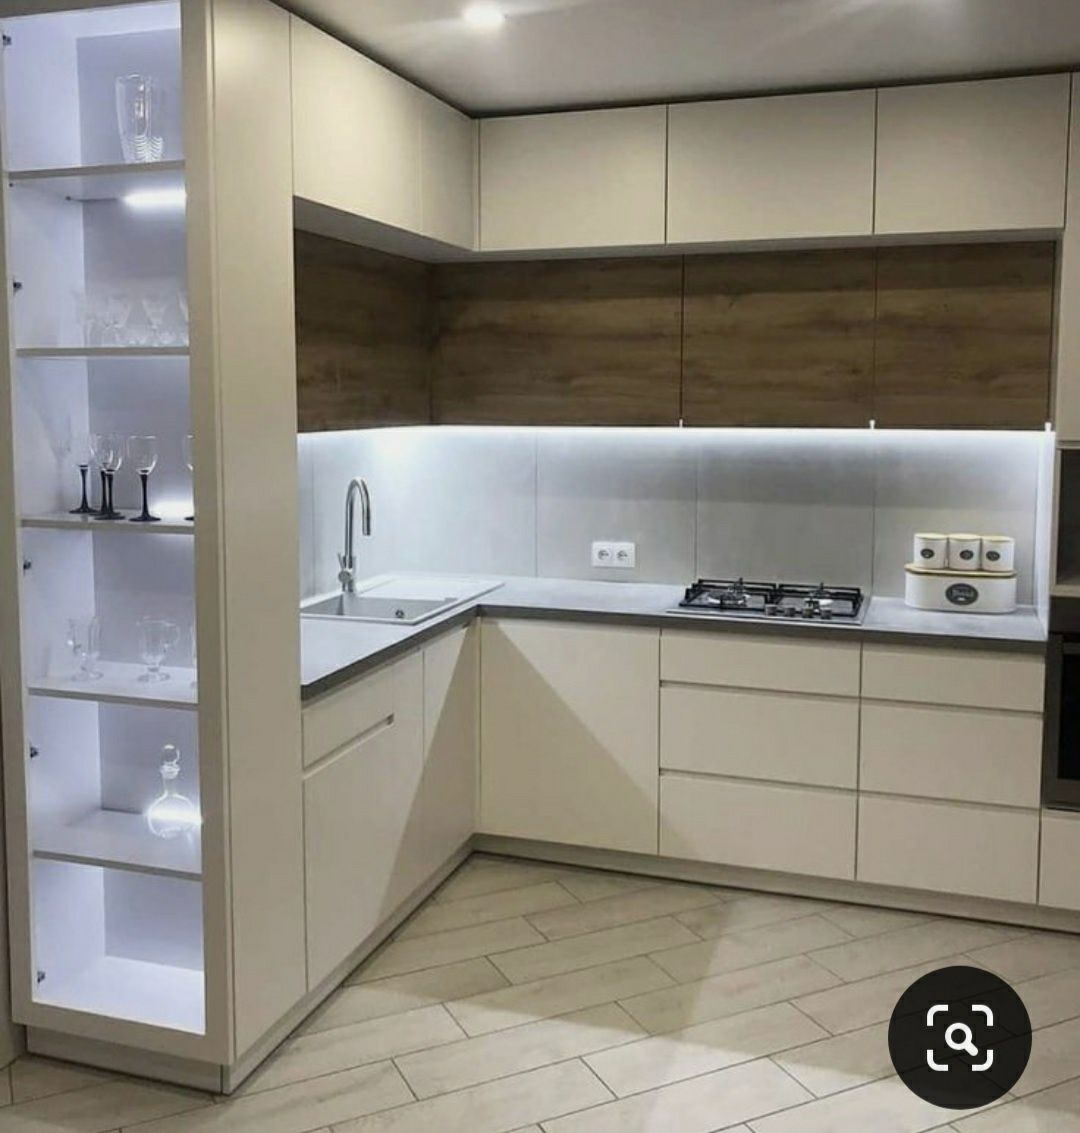 Projekt wizualizacjia 3D kuchni, łazienki, szafy garderoby na wymiar